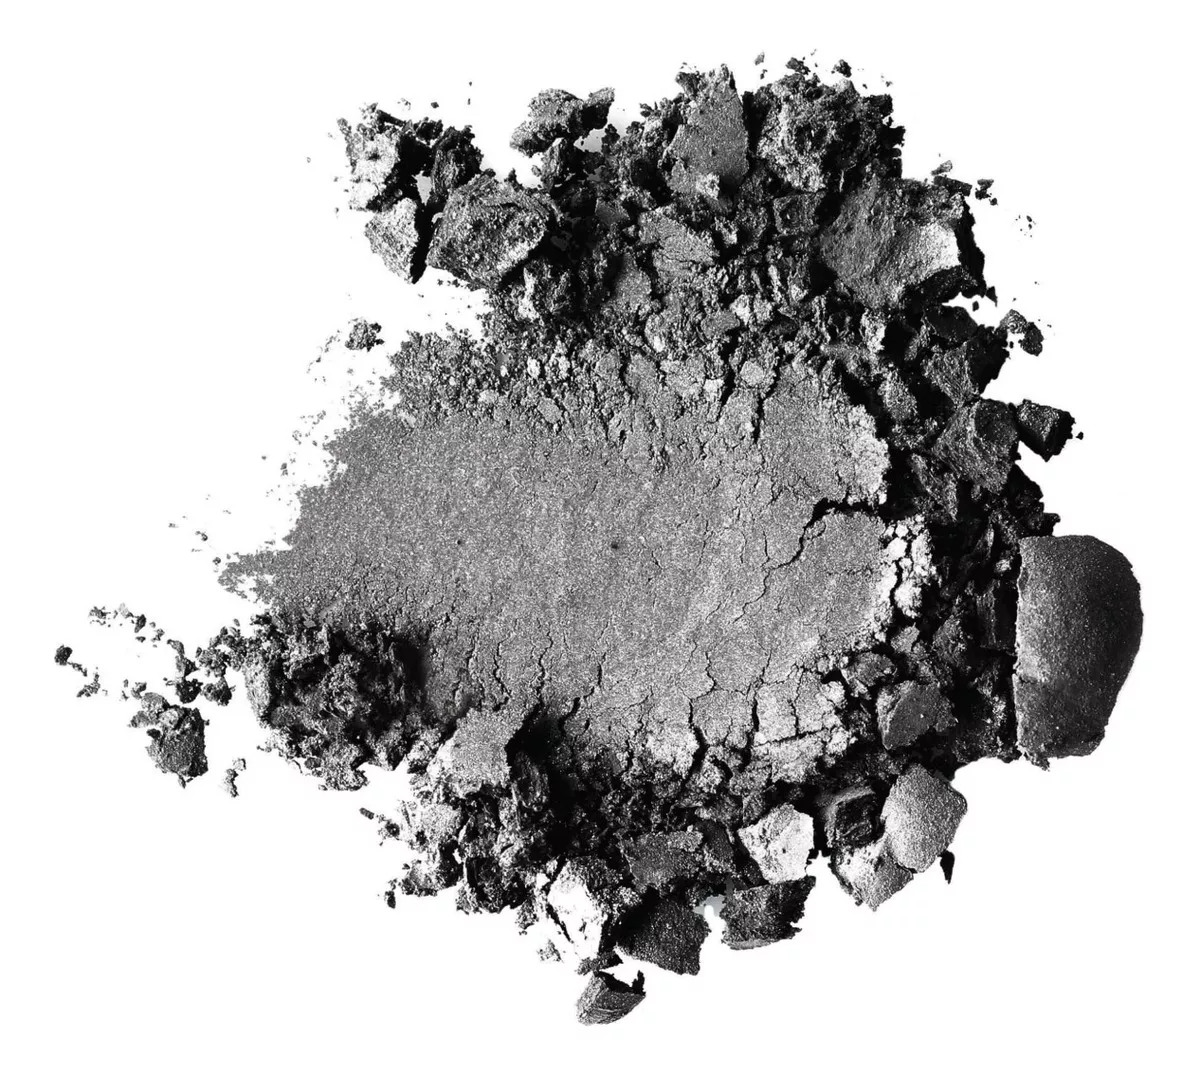 Tercera imagen para búsqueda de pigmento para cemento